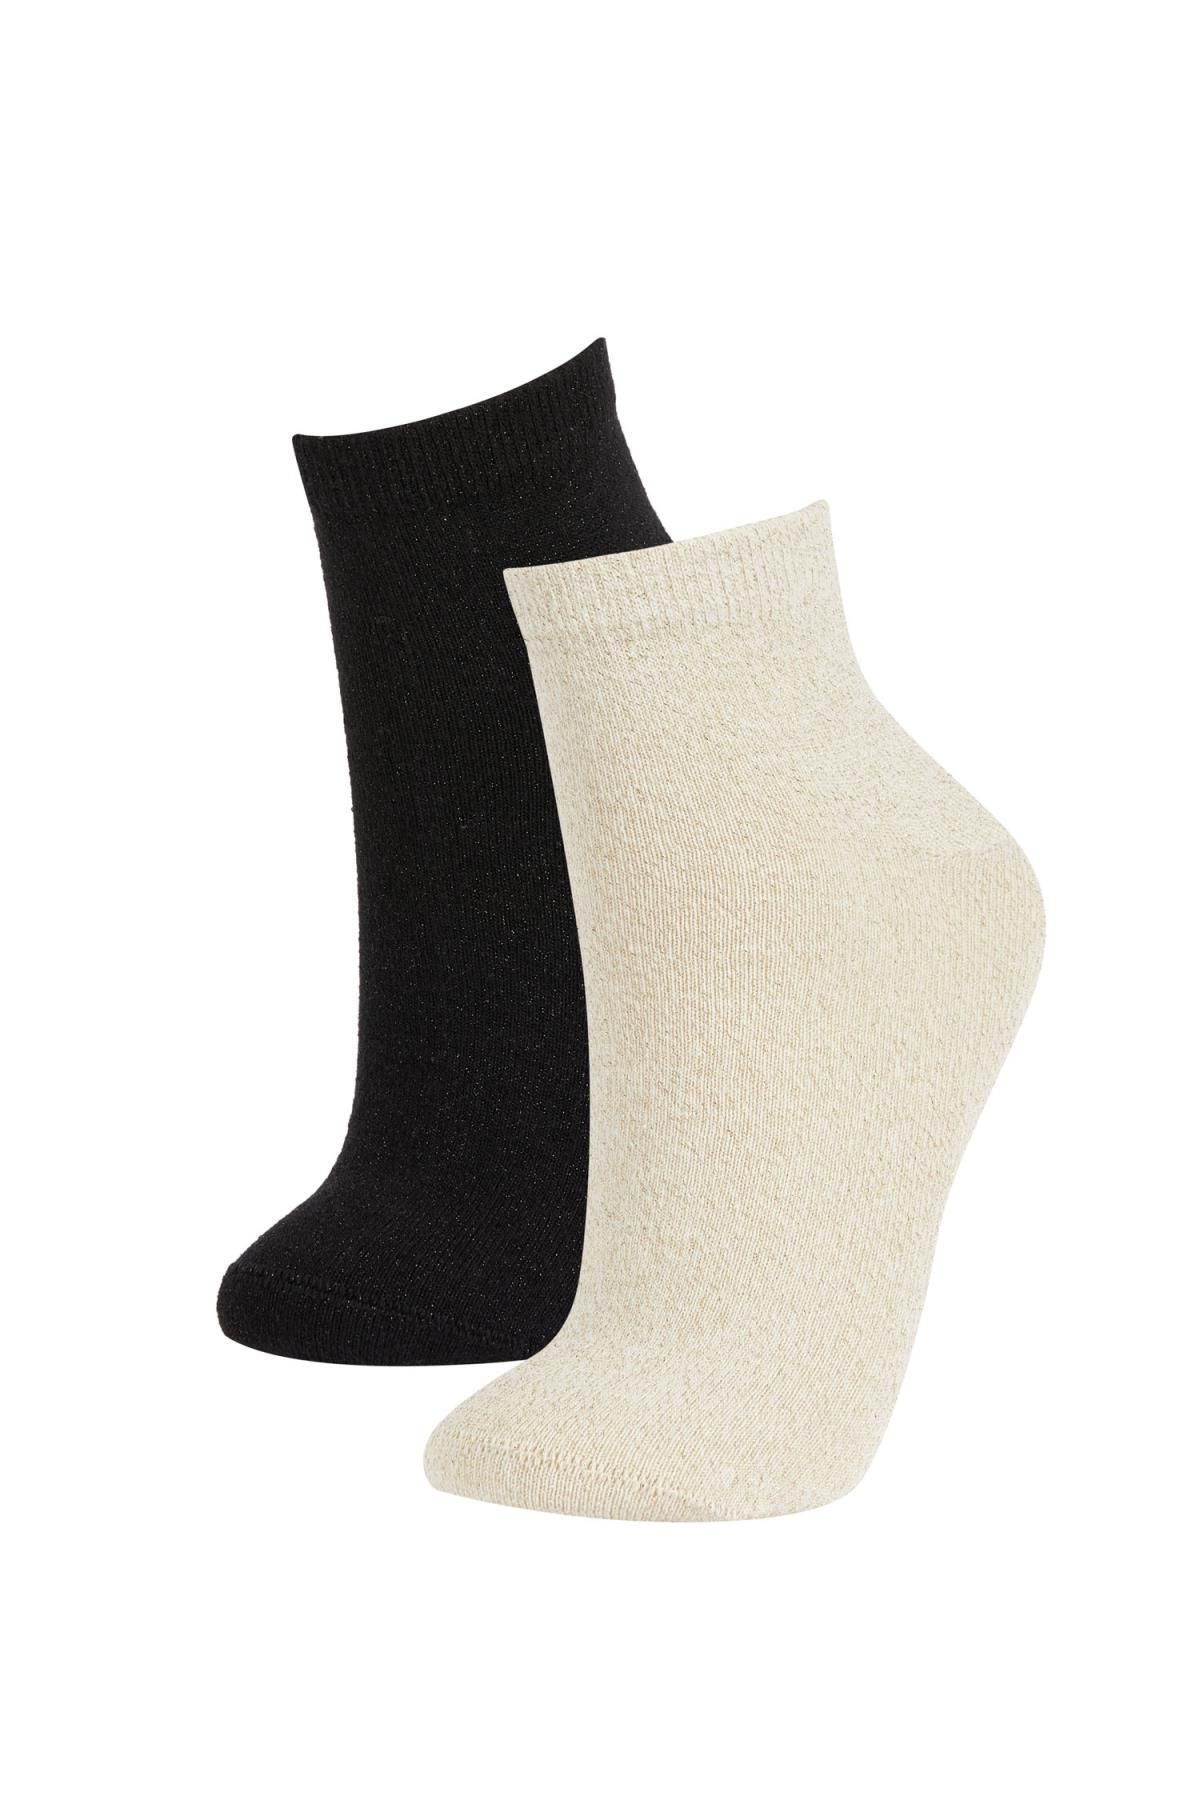 Defacto Kadın 2li Pamuklu Uzun Çorap B2488axns